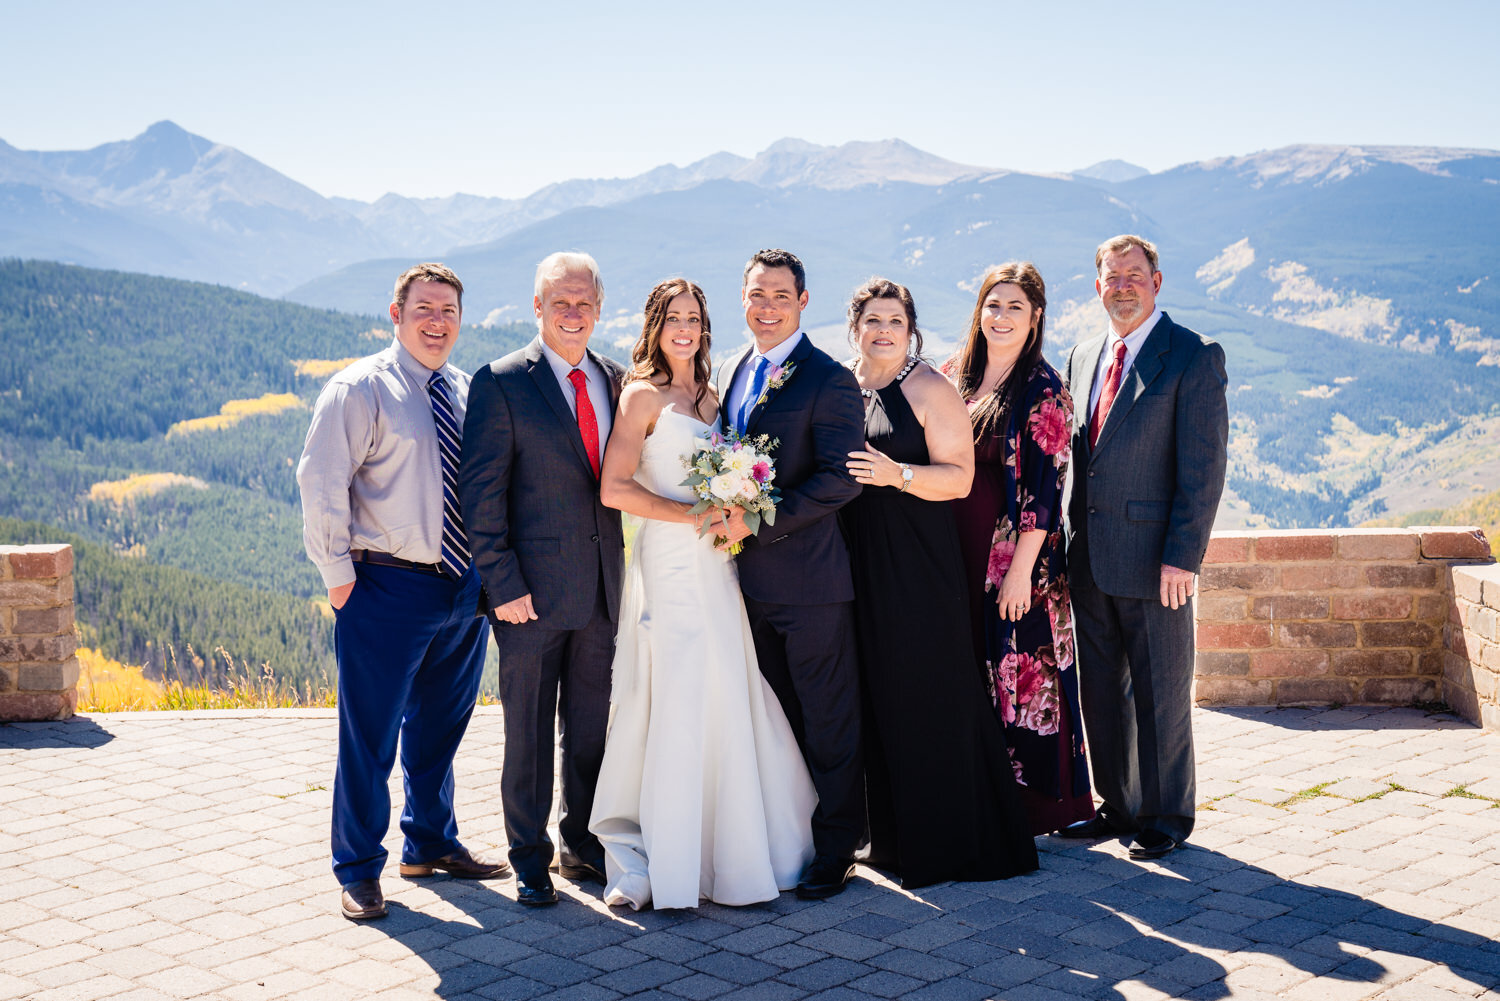  Vail Colorado Wedding | Colorado Mountain Wedding Photographer | JMGant Photography 